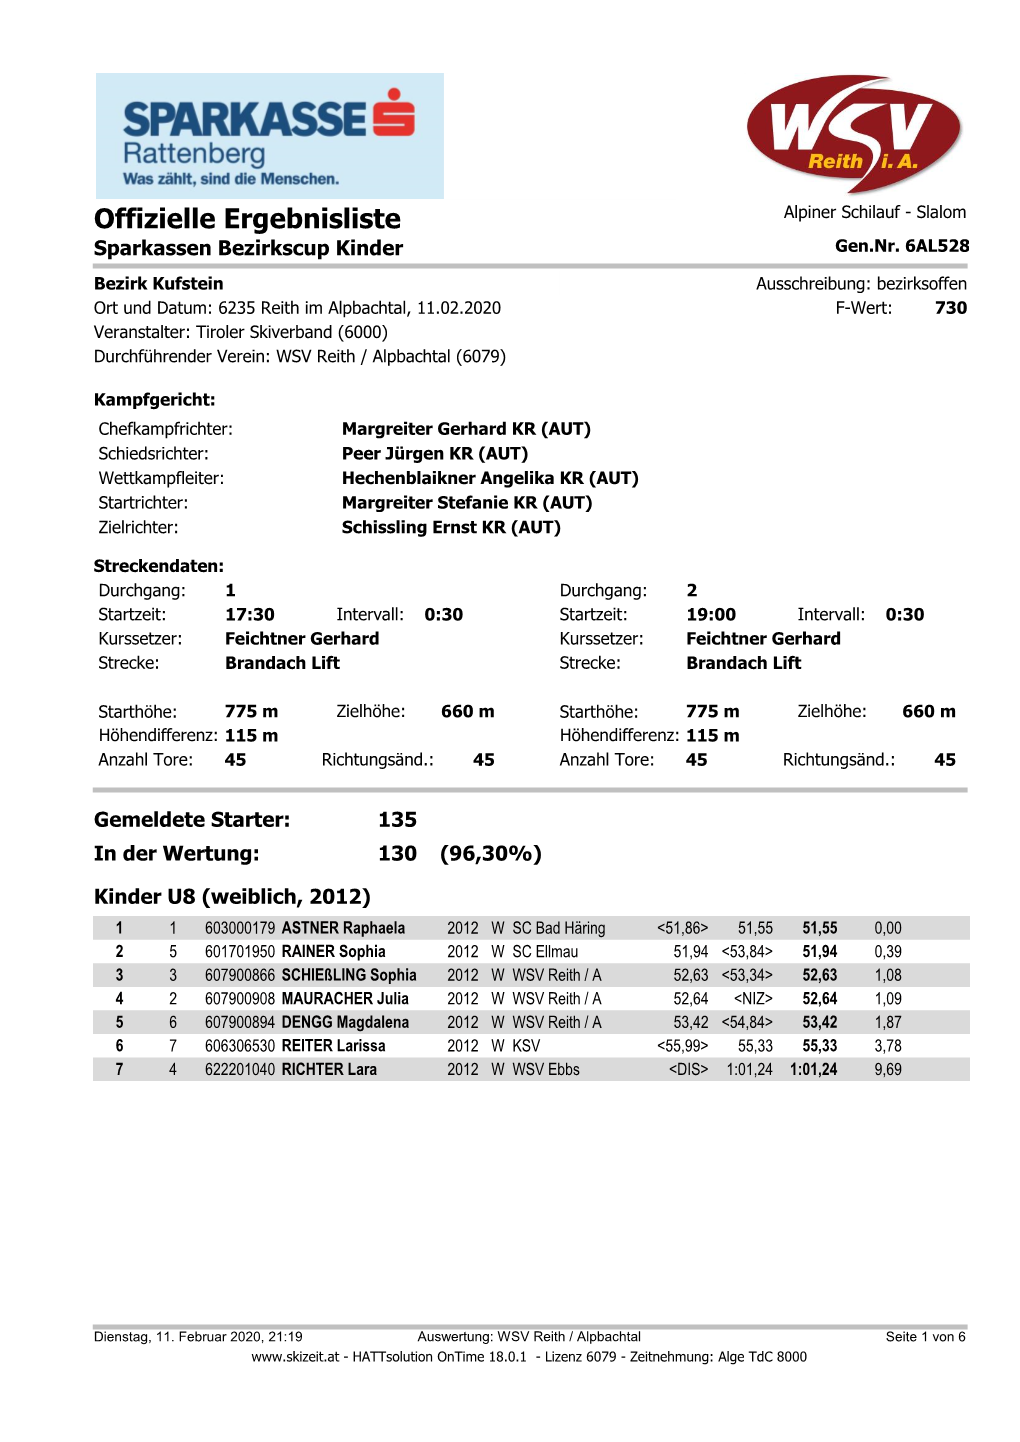 Offizielle Ergebnisliste Alpiner Schilauf - Slalom Sparkassen Bezirkscup Kinder Gen.Nr